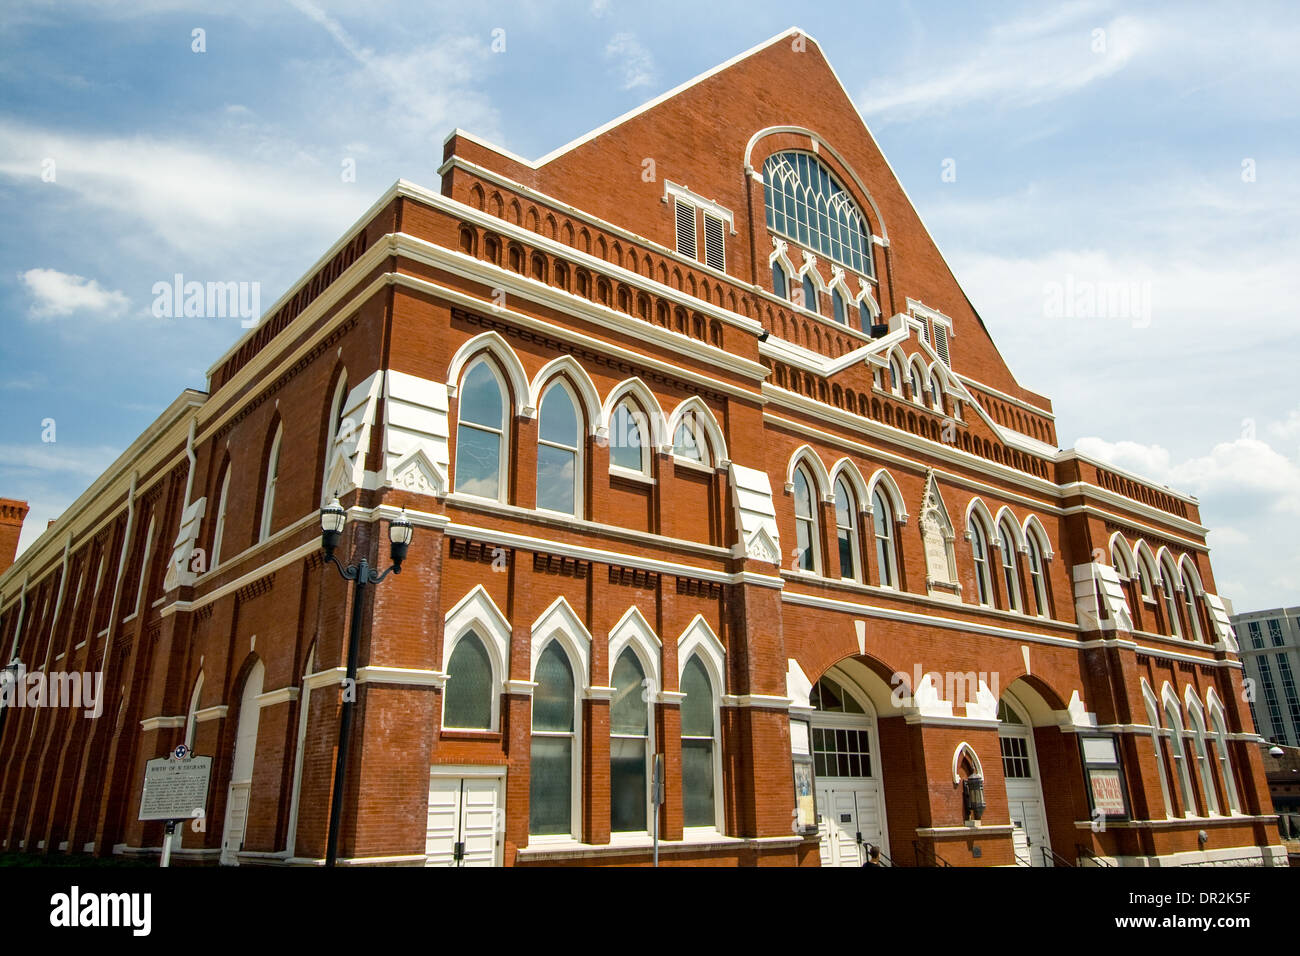 Ryman Auditorium in Nashville, Tennessee Stock Photo